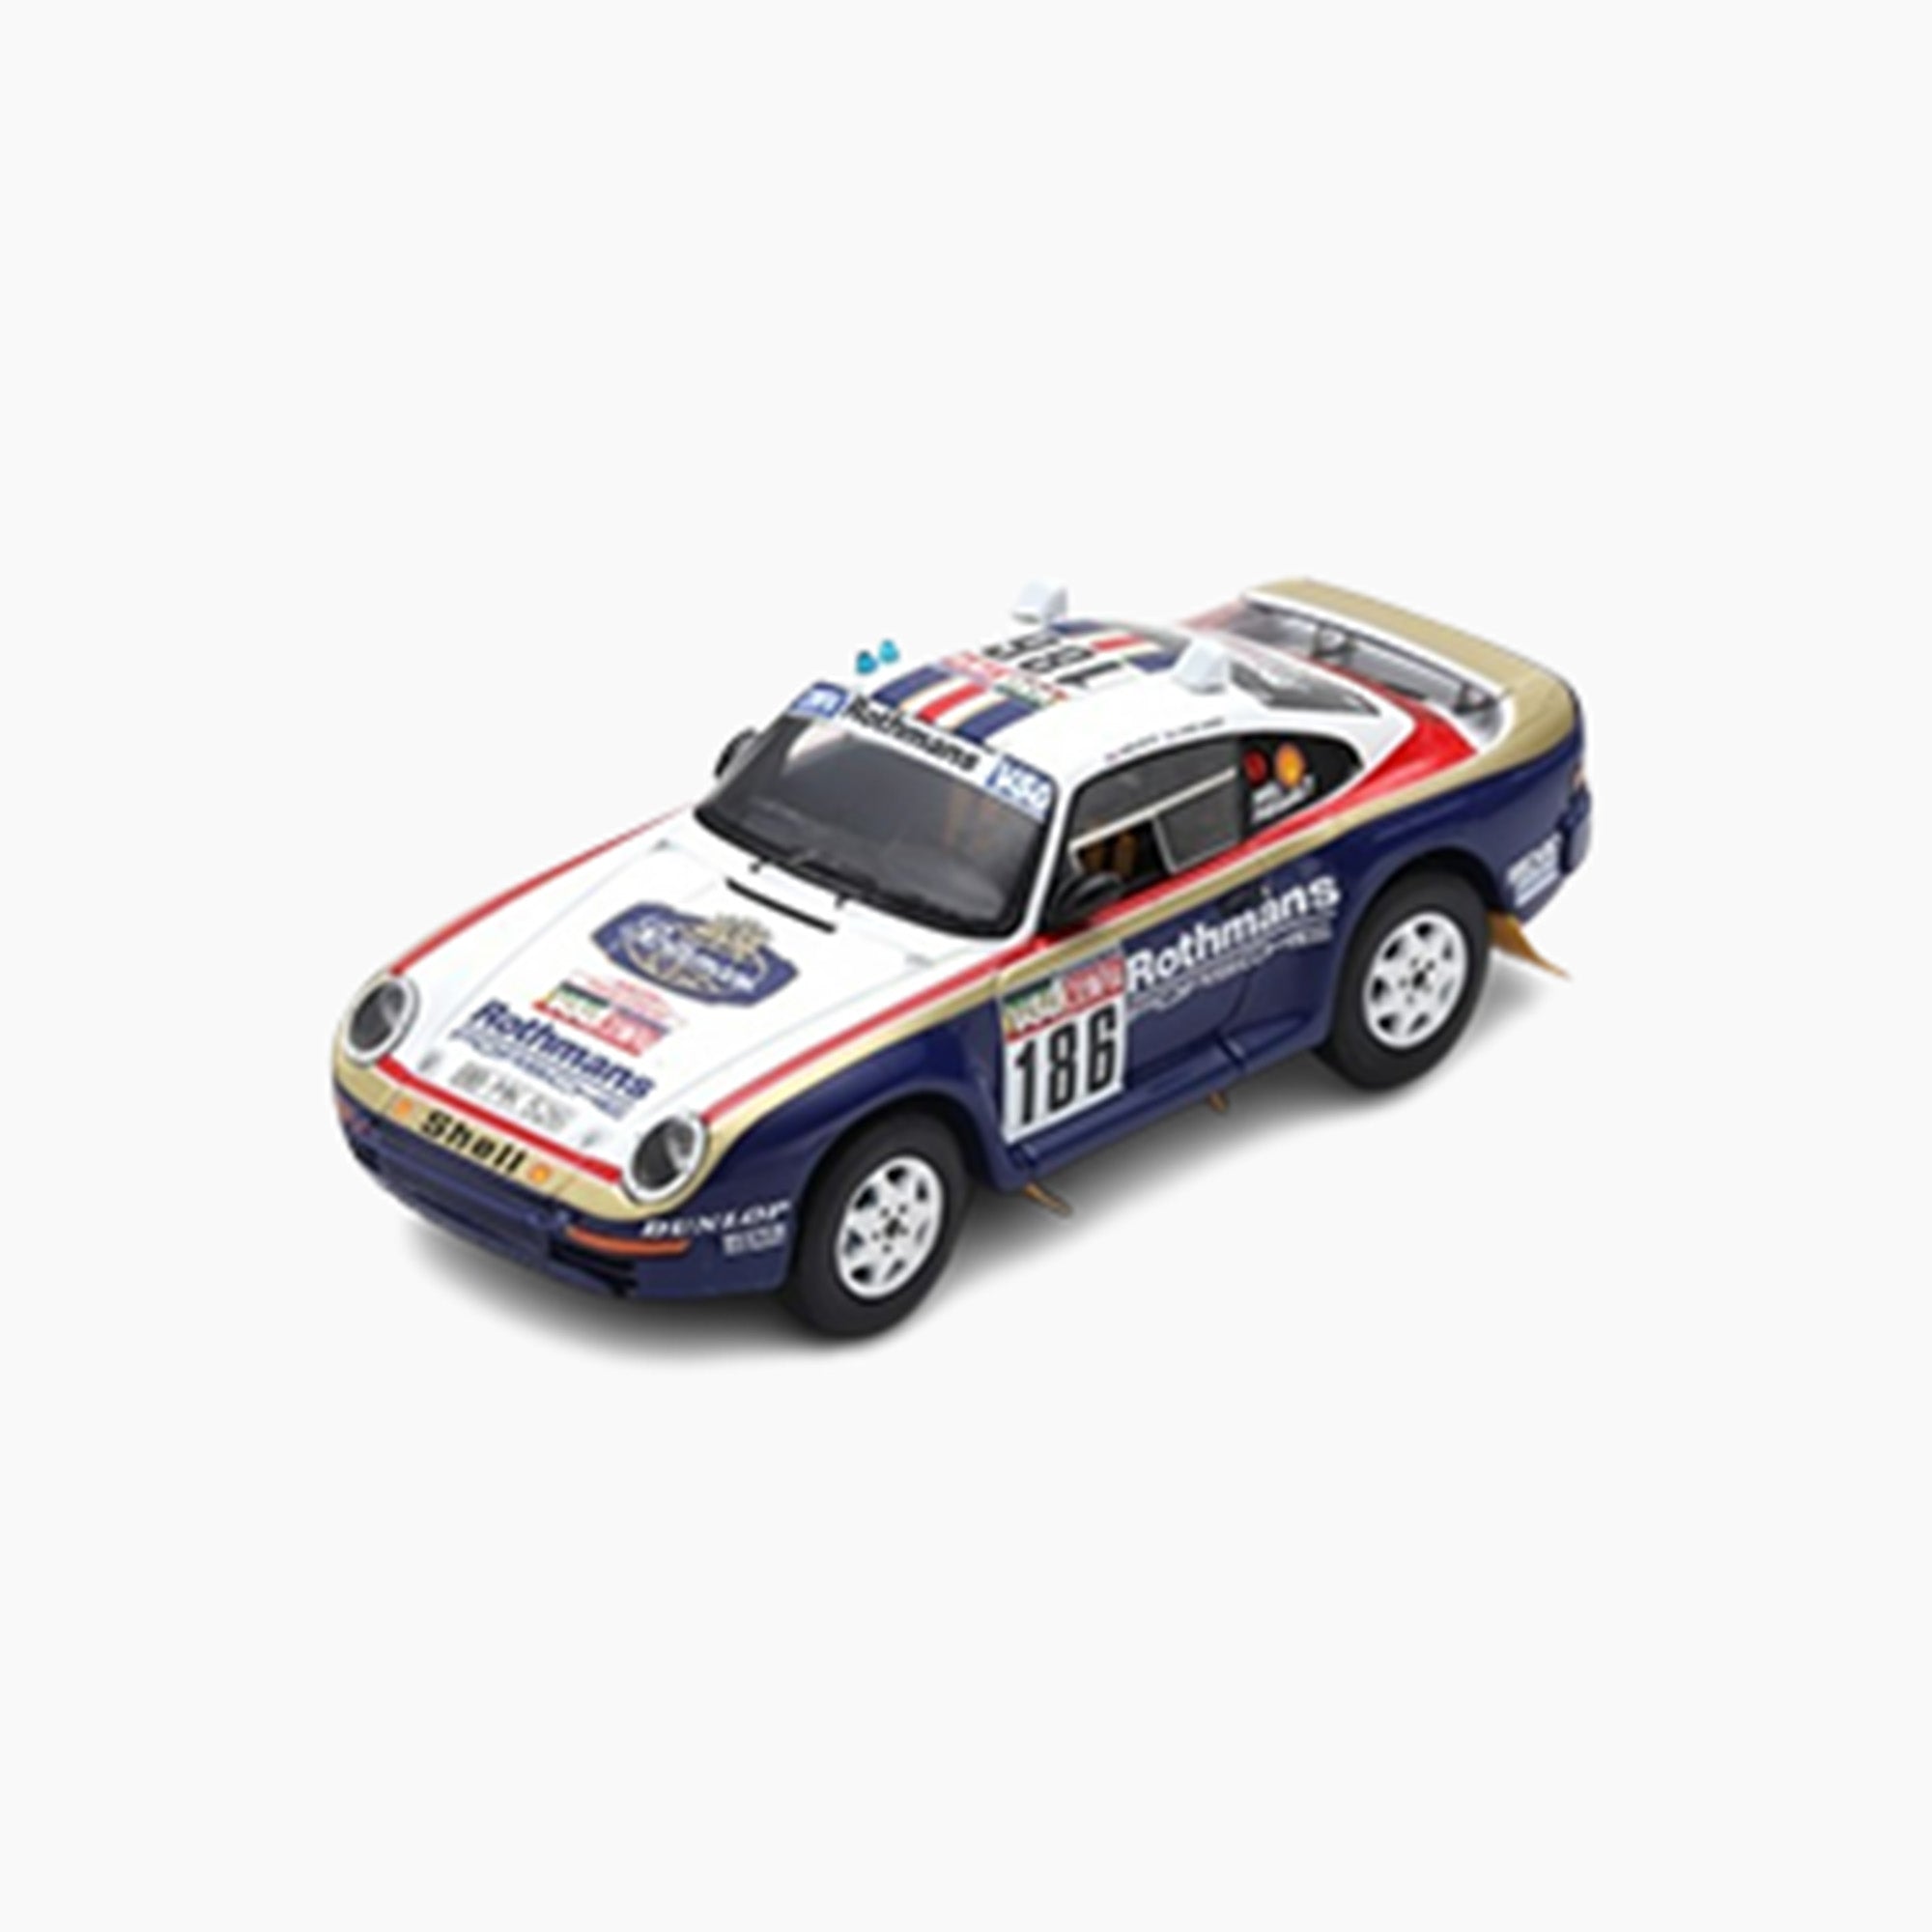 Porsche 959 No.186 Paris - Dakar 1985 | 1:43 Scale Model-1:43 Scale Model-Spark Models-gpx-store